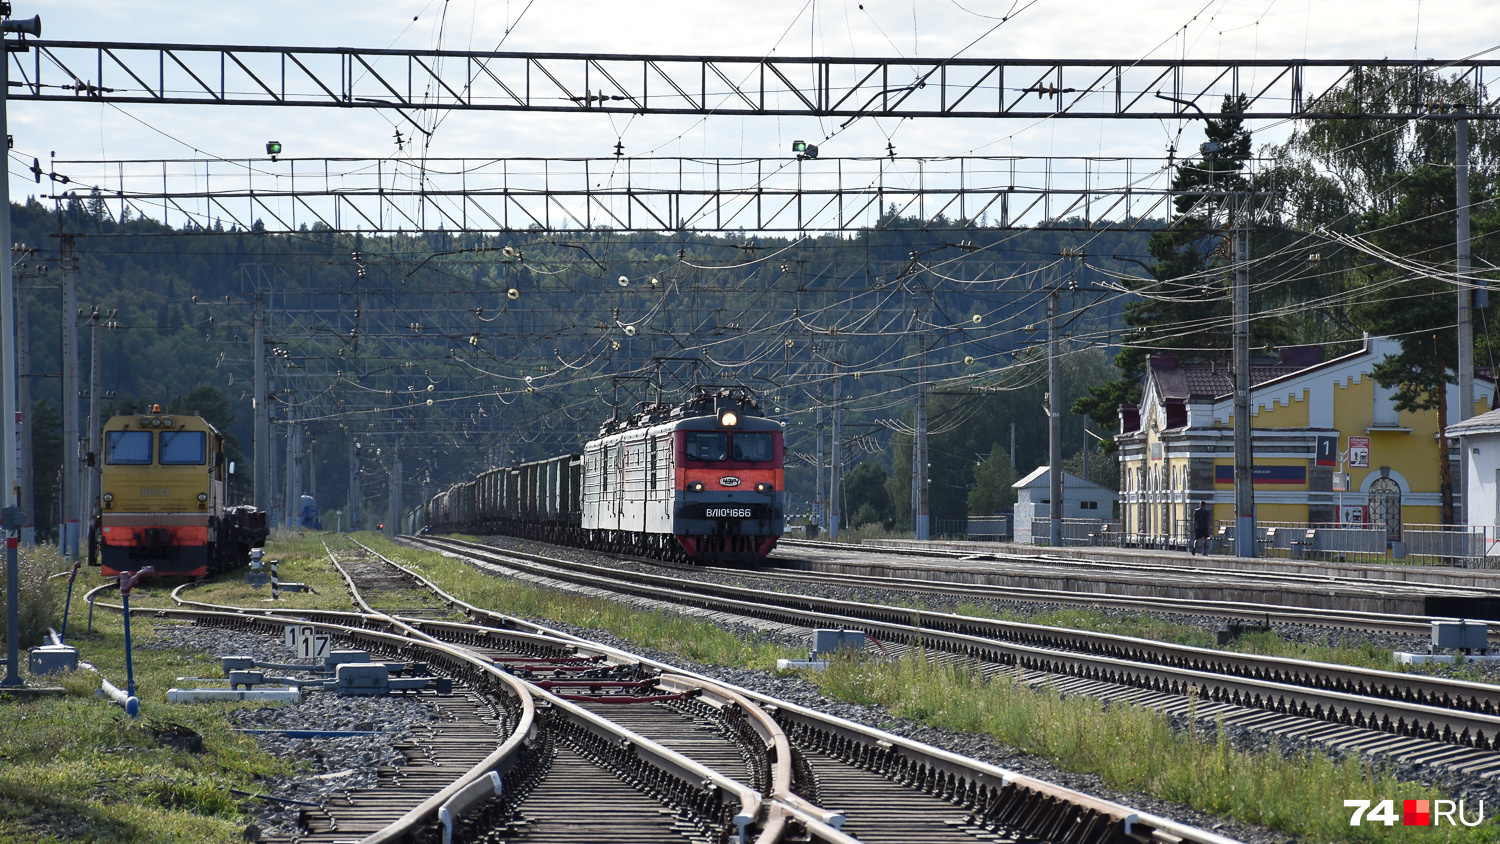 Через Сим проходит магистраль Южно-Уральской железной дороги, соединяющей Челябинск с западной Россией